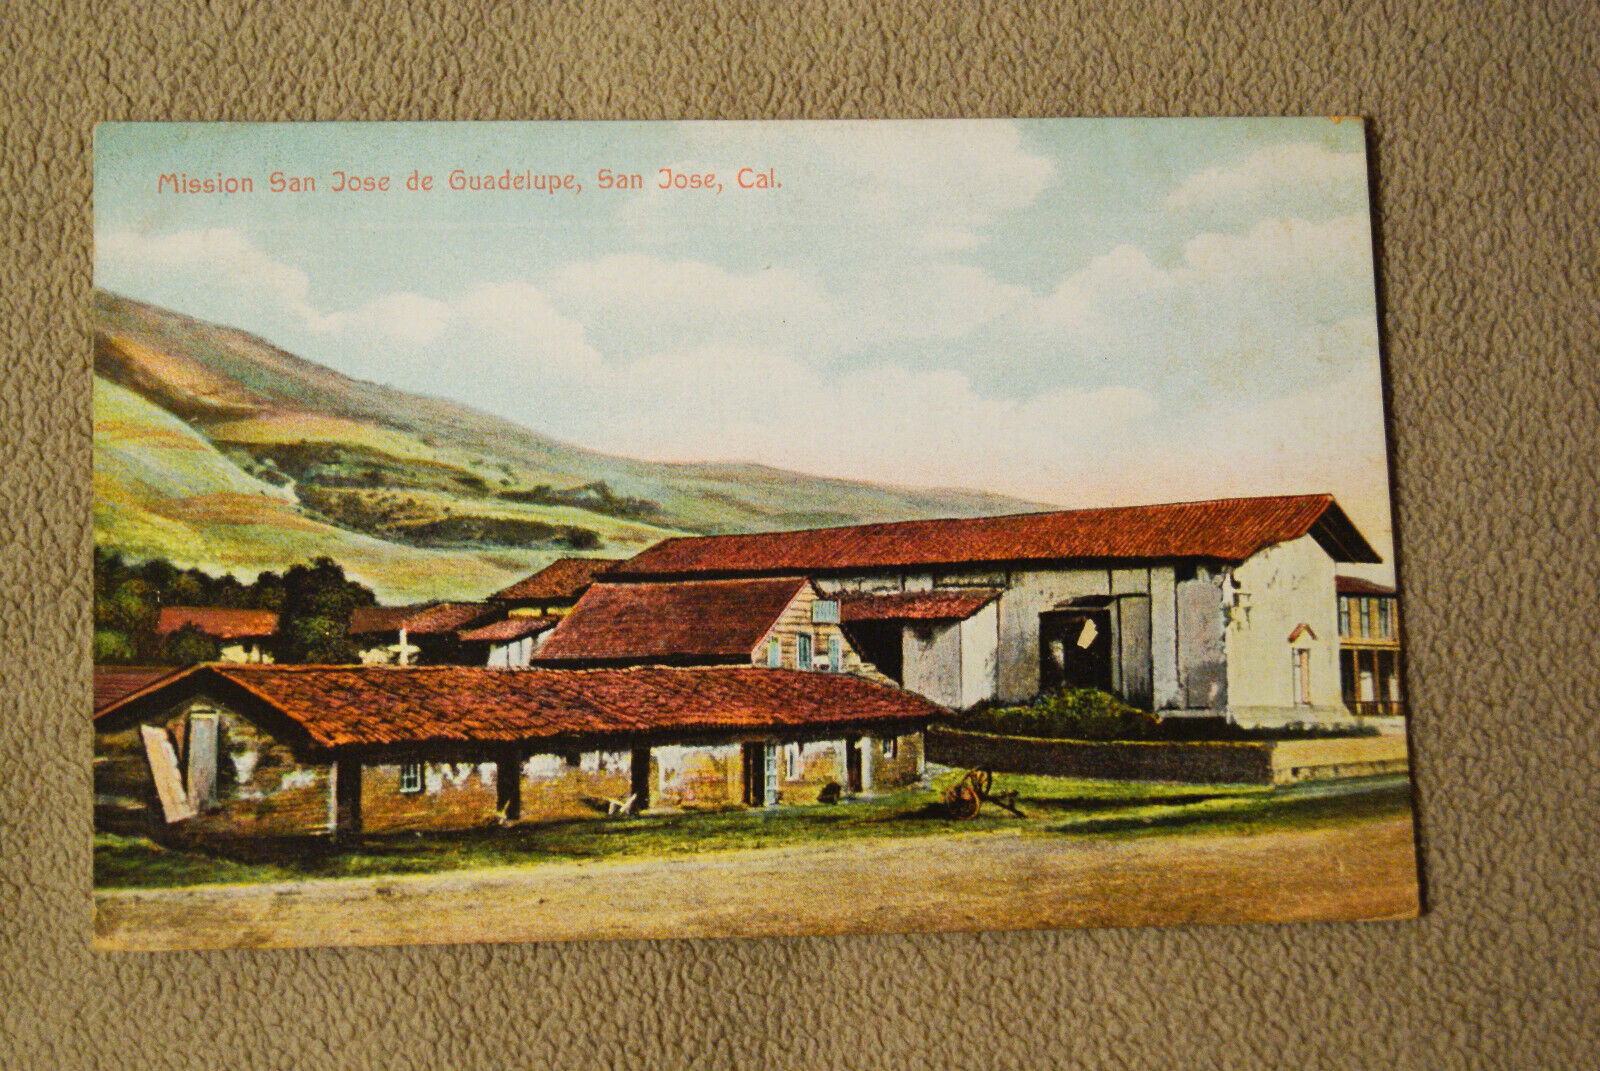 Mission San Jose de Guadelupe, San Jose, California